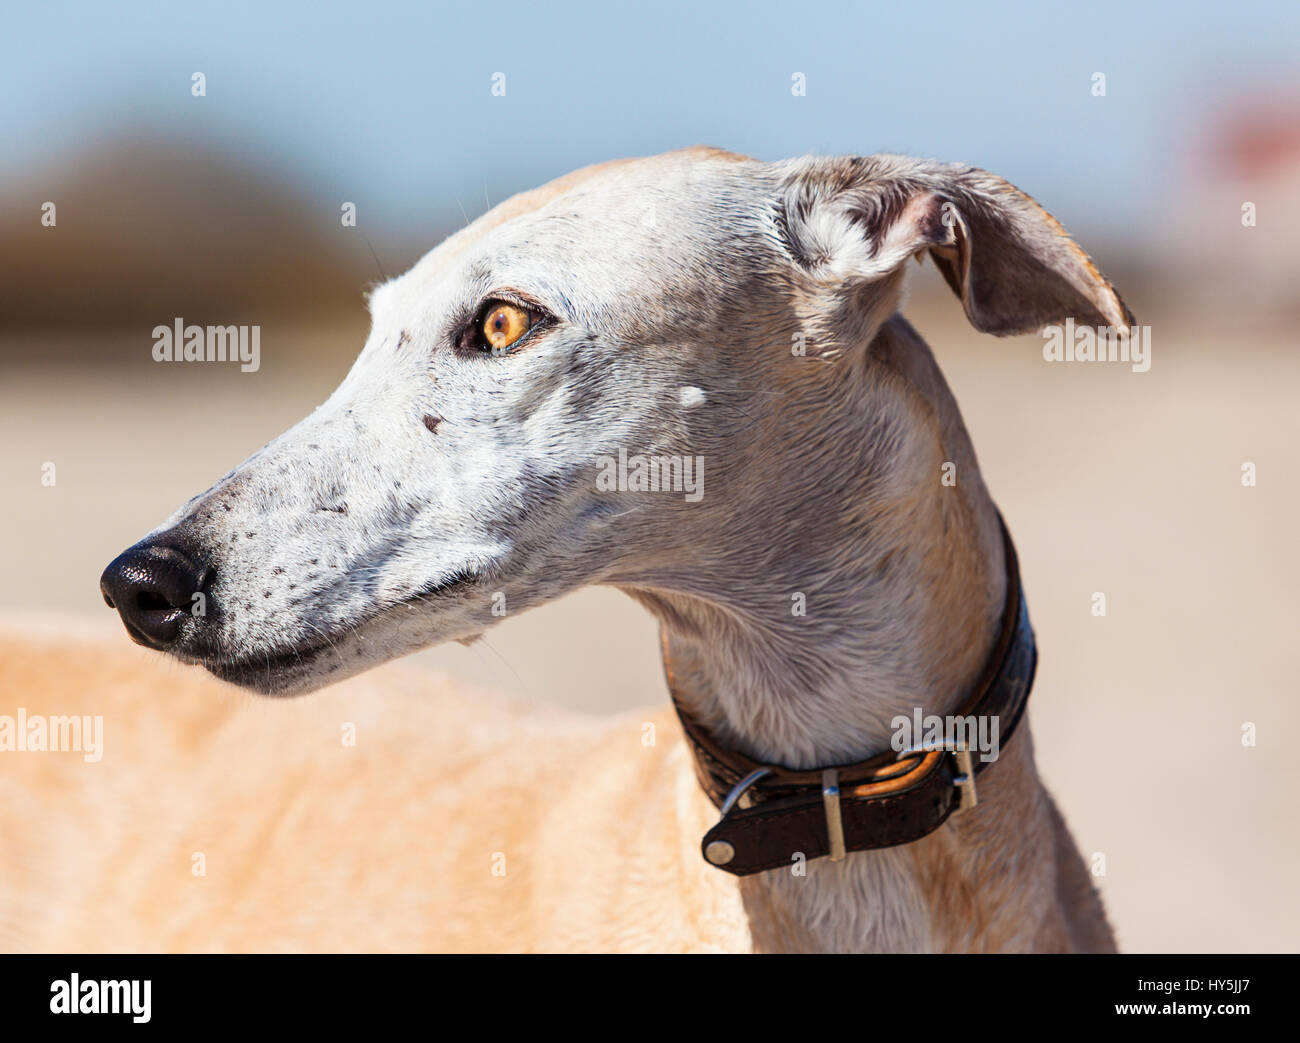 Outdoor-Porträt Galgo Español oder spanischen Windhund Stockfoto